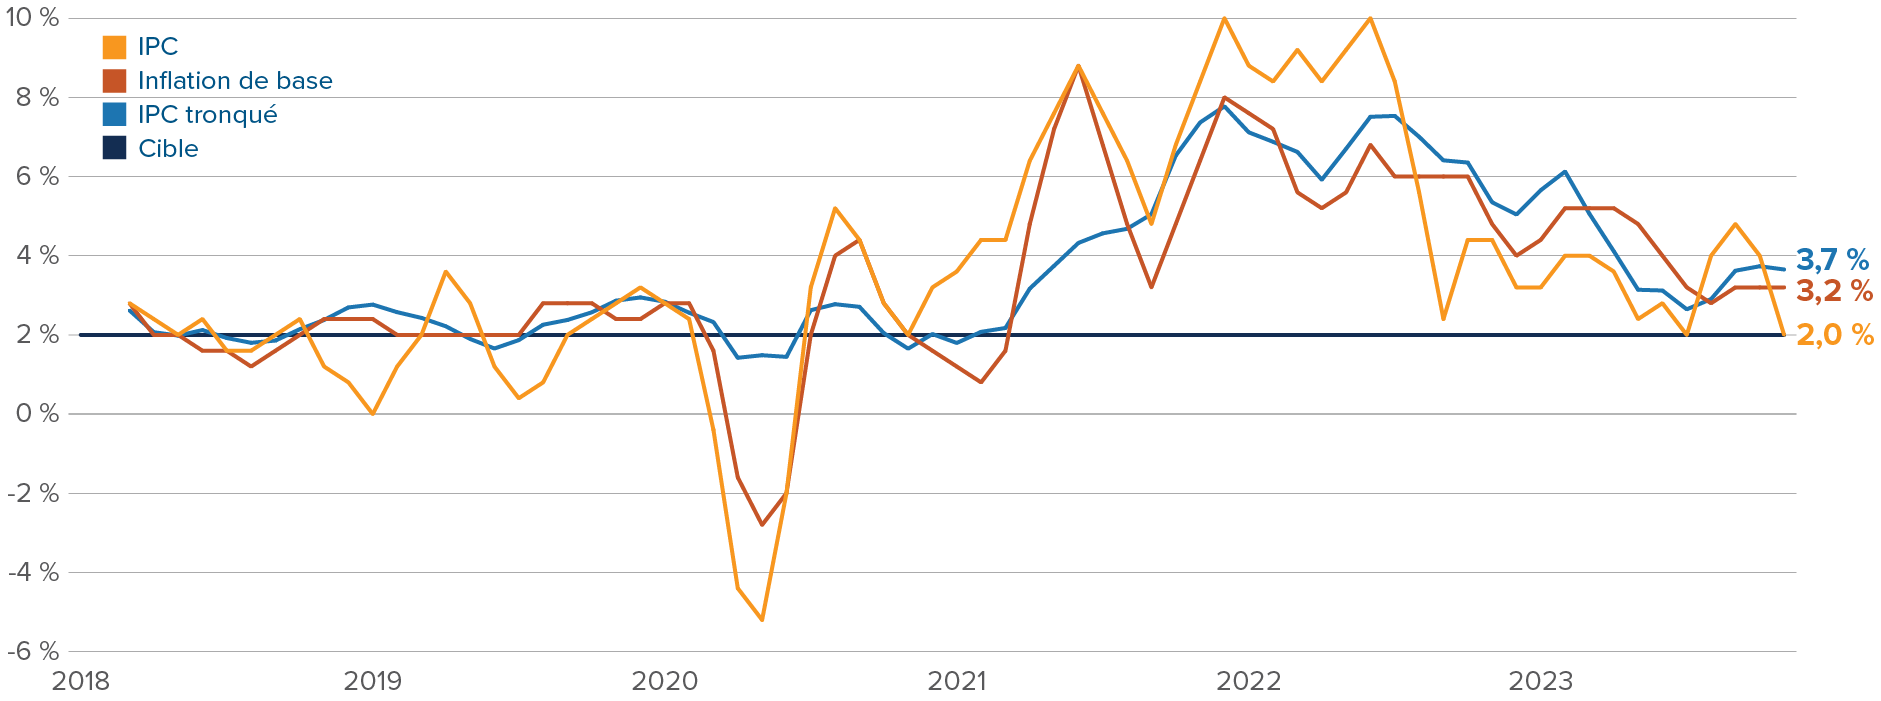 Graphique : Inflation annualisée sur 3 mois aux États-Unis, indexé à 2019 (zéro). L’IPC a culminé à 10 % en 2022, pour tomber à 2 % aujourd’hui. L’IPC de base a culminé à 8 % en 2022 et a chuté de 3,1 %. L’IPC tronqué a culminé à près de 8 % en 2022, avant de retomber à 3,7 %.